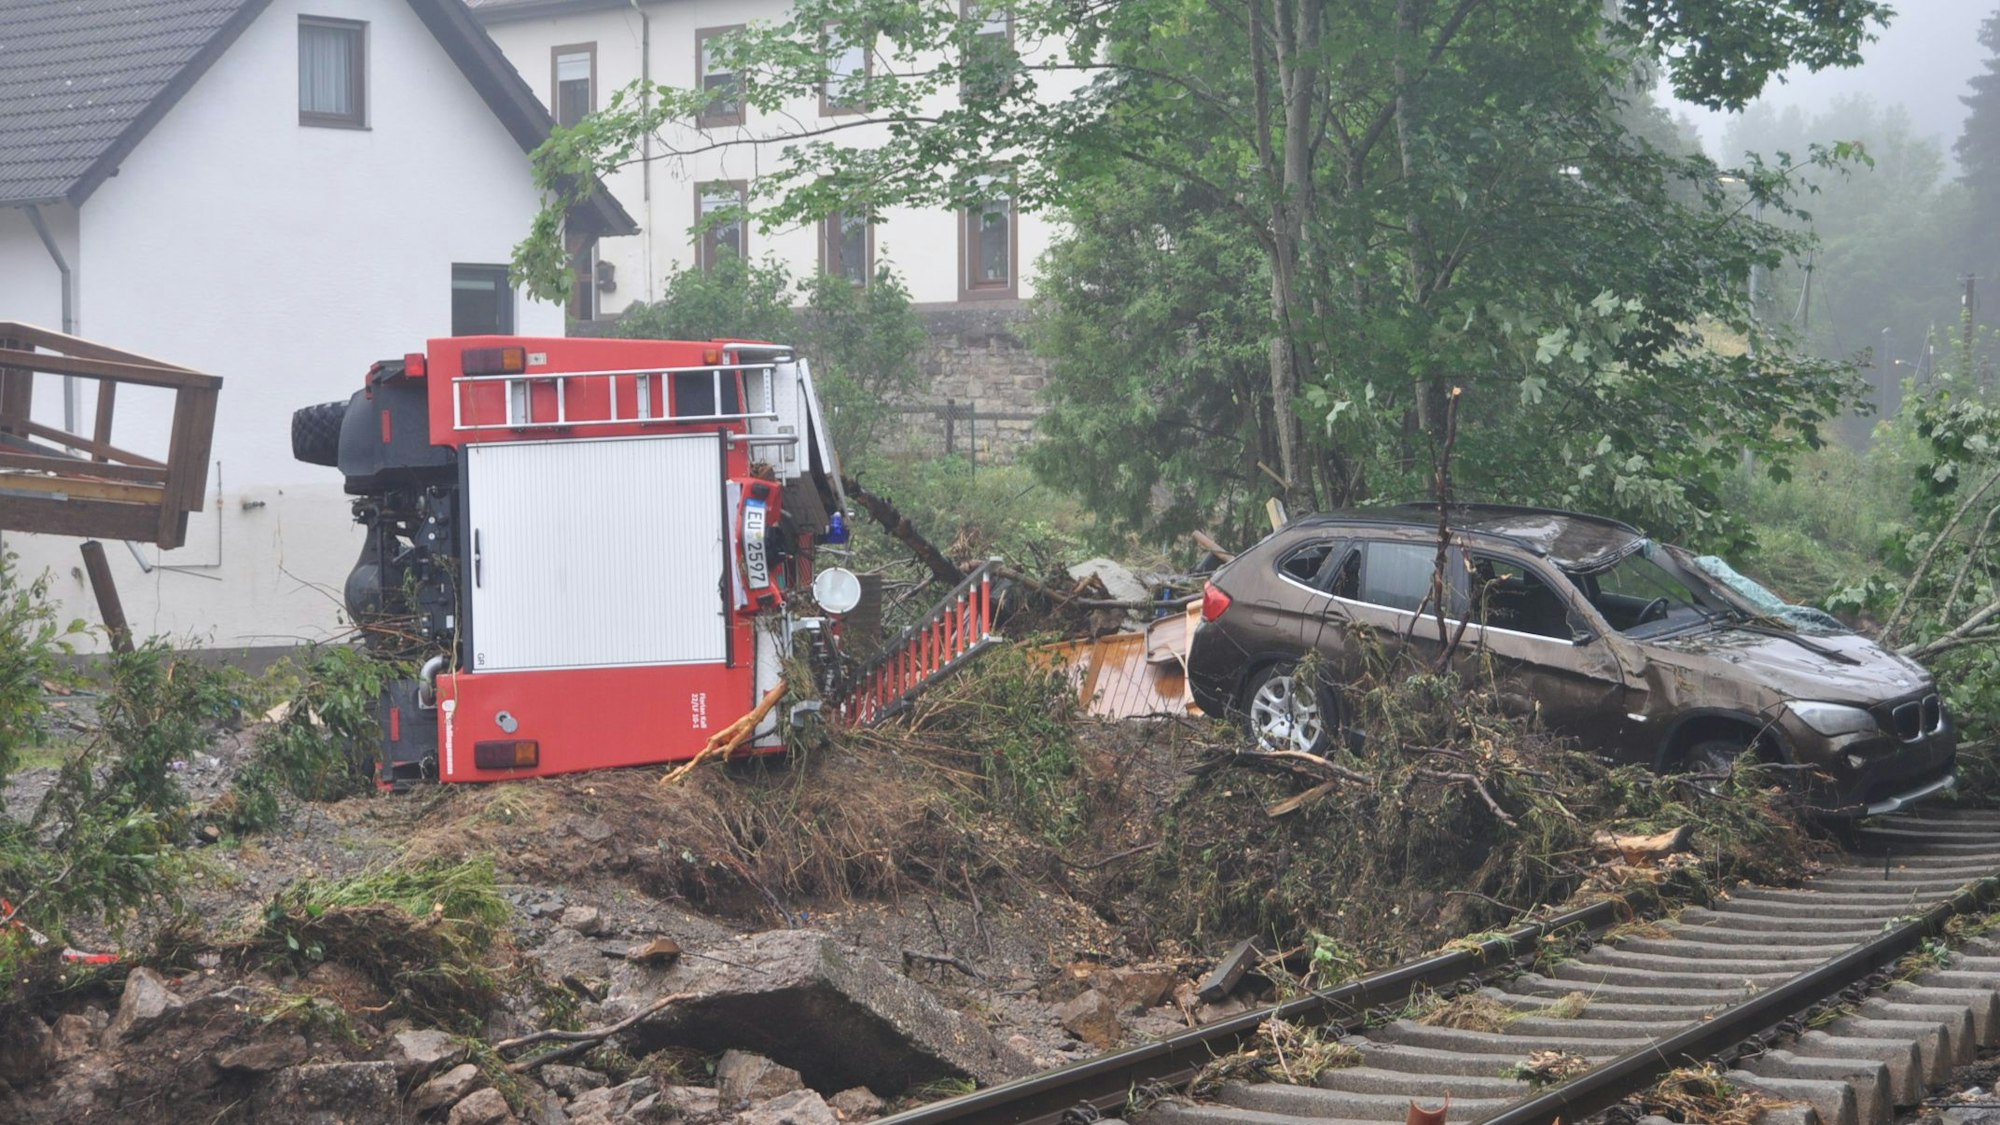 Das Bild zeigt das umgestürzte Fahrzeug der Löschgruppe Wahlen. Es liegt hinter den Gleisen inmitten der Verwüstung, die die Flut hinterließ.